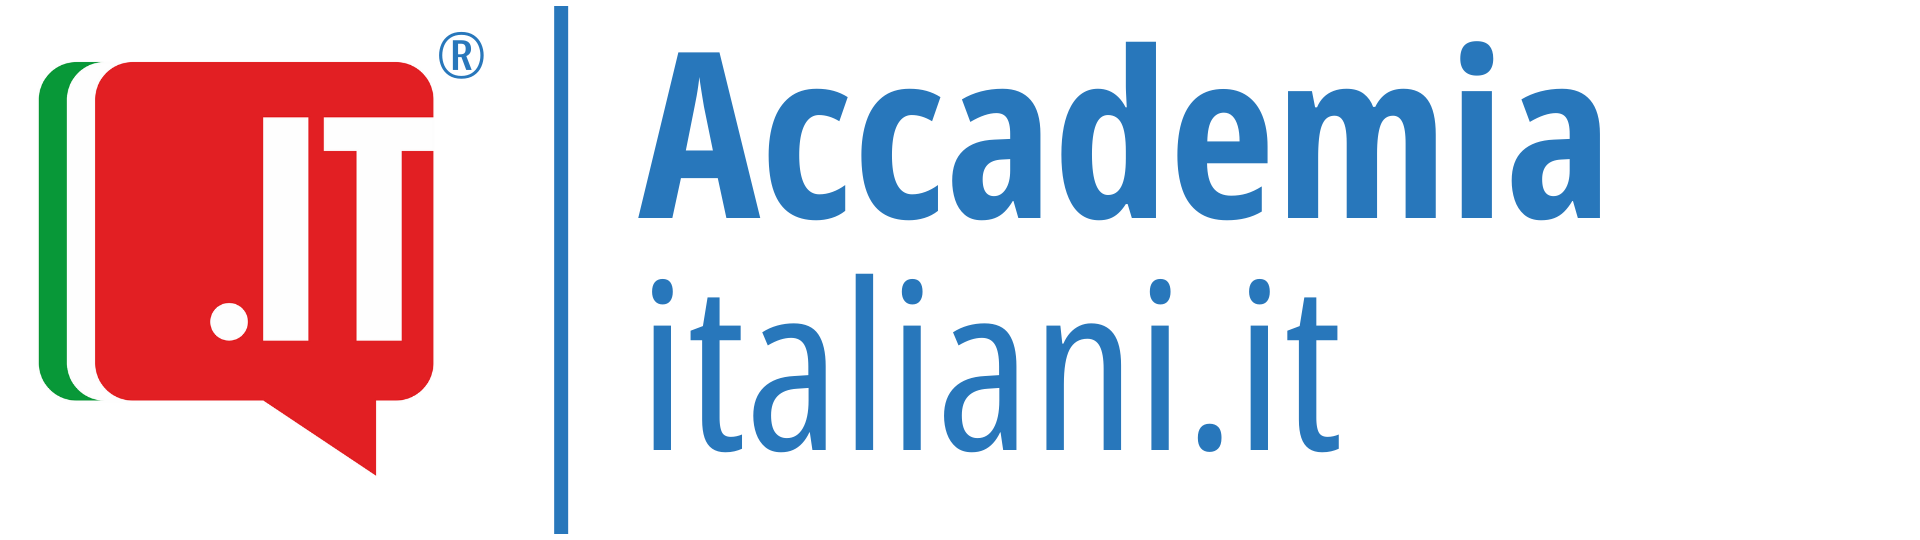 Accademia Italiani.it